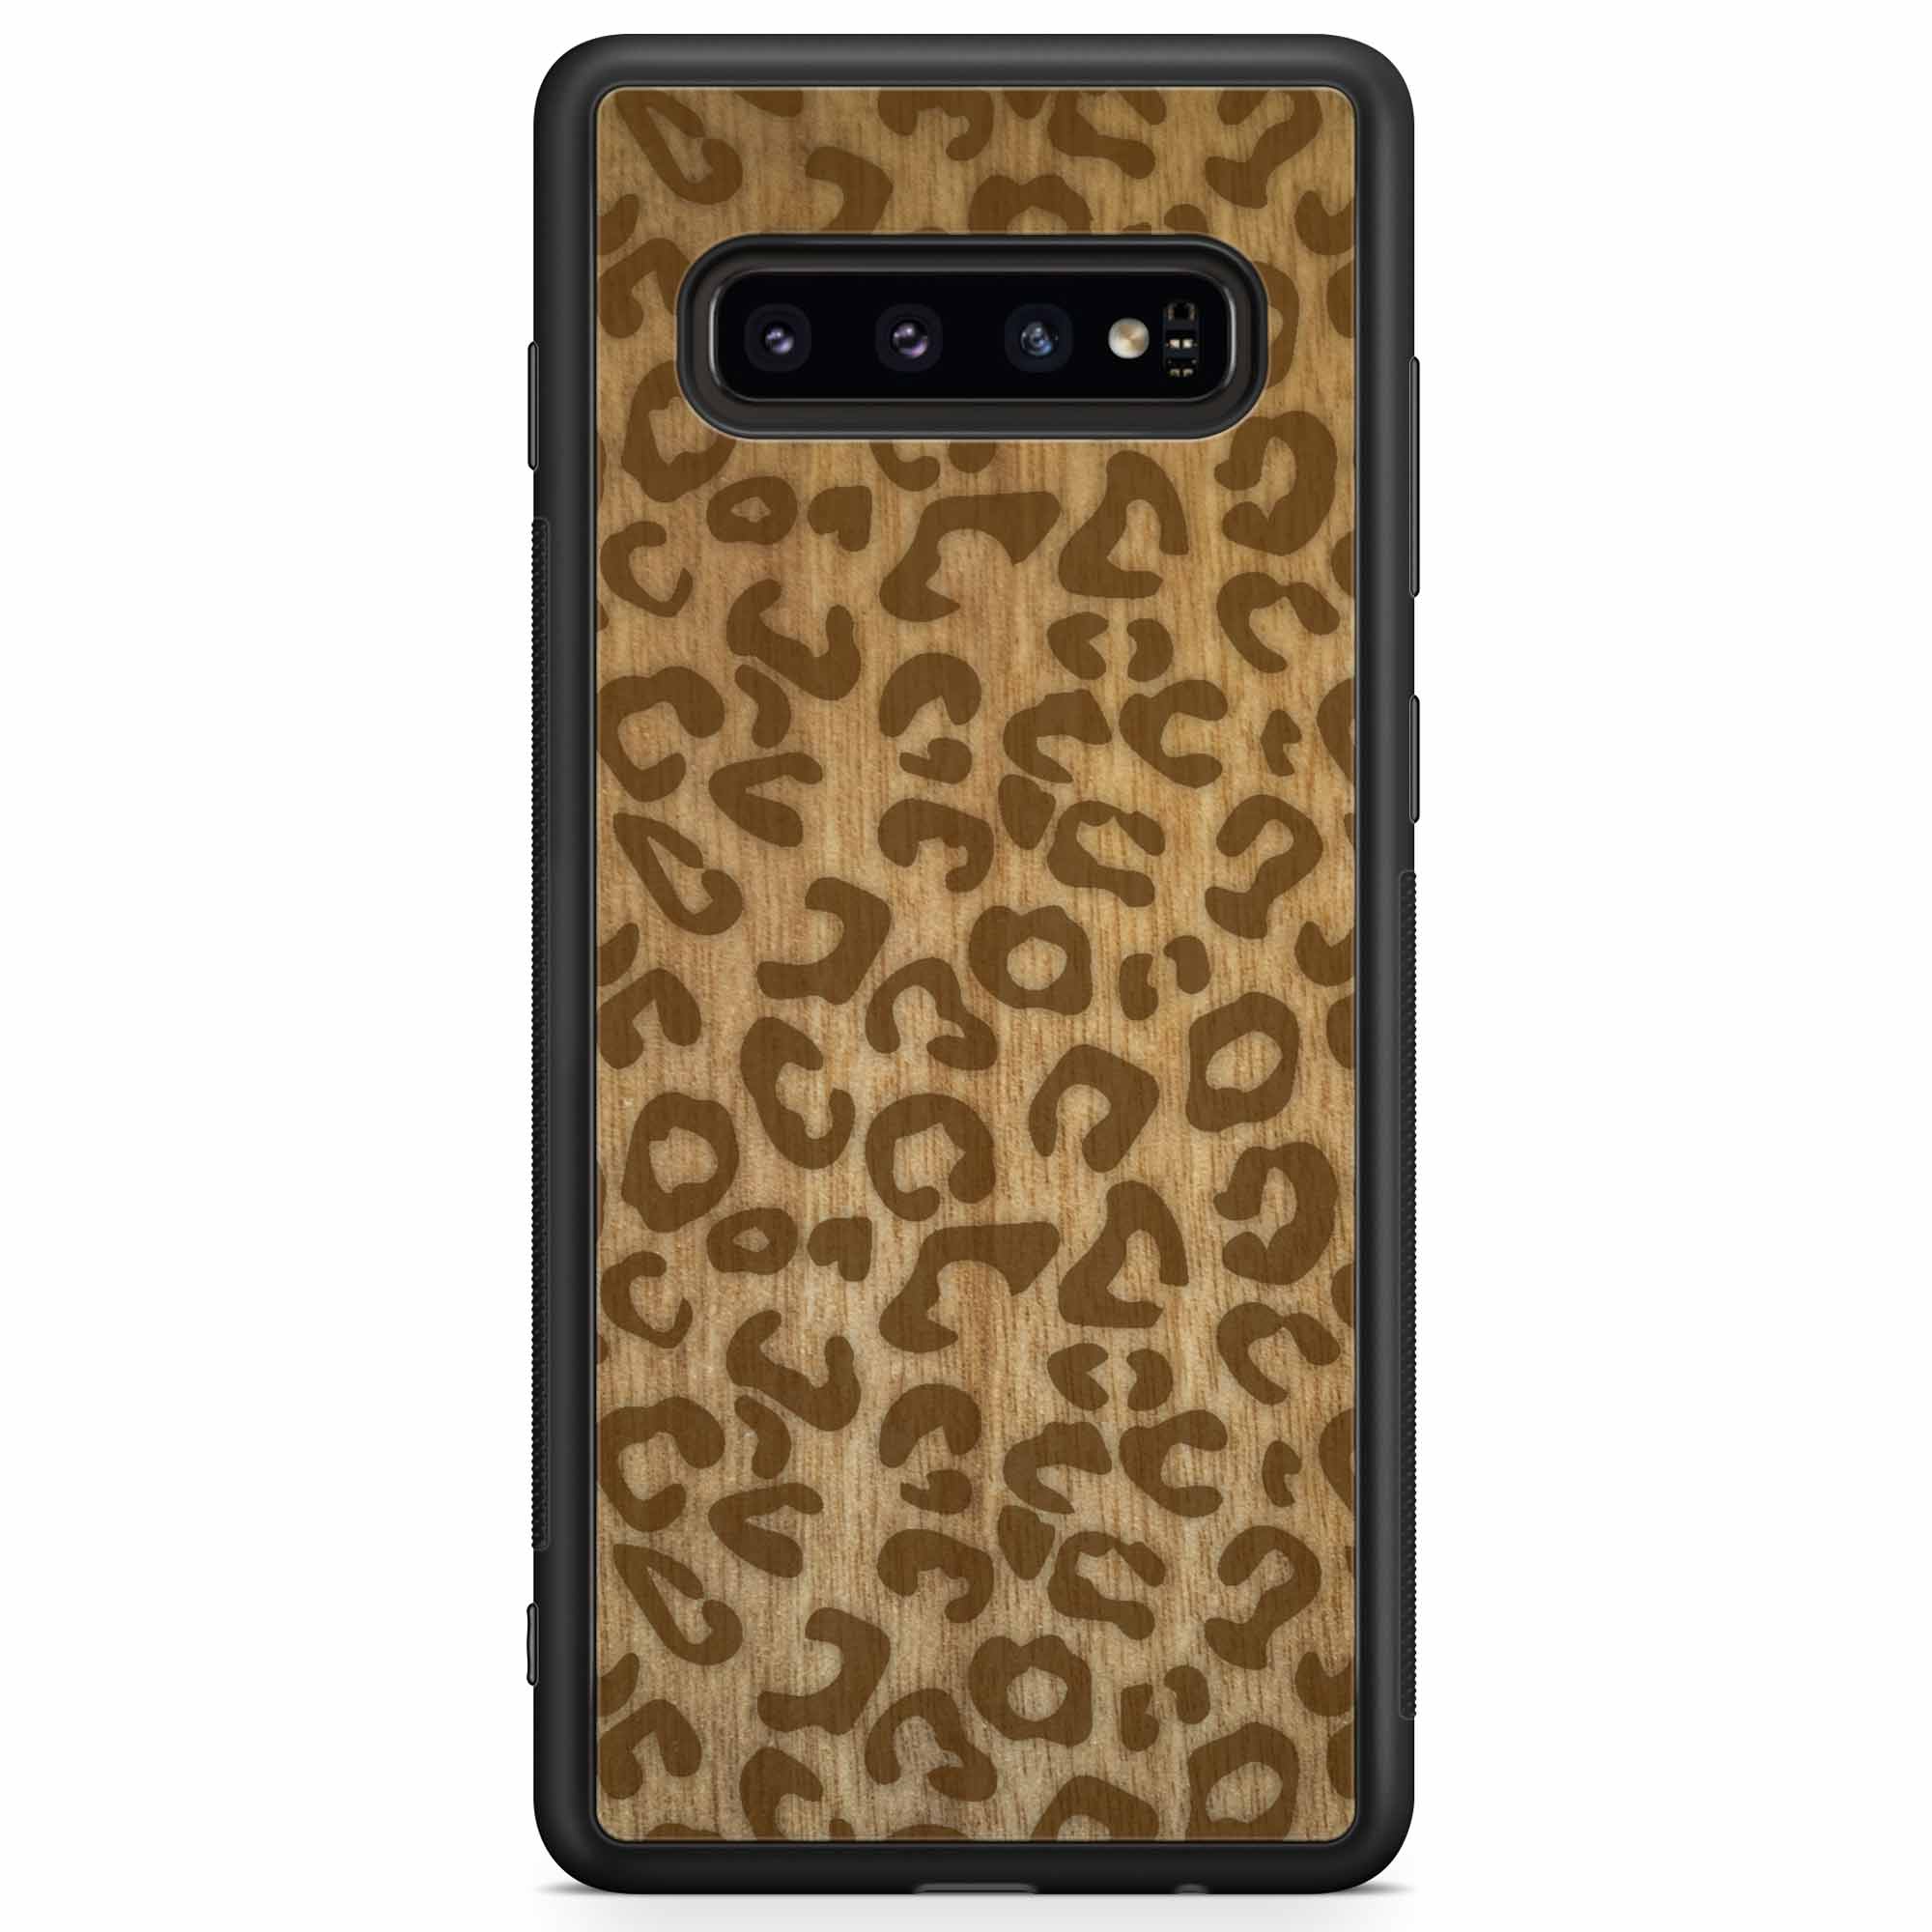 Funda de madera para teléfono Samsung S10 con estampado de guepardo